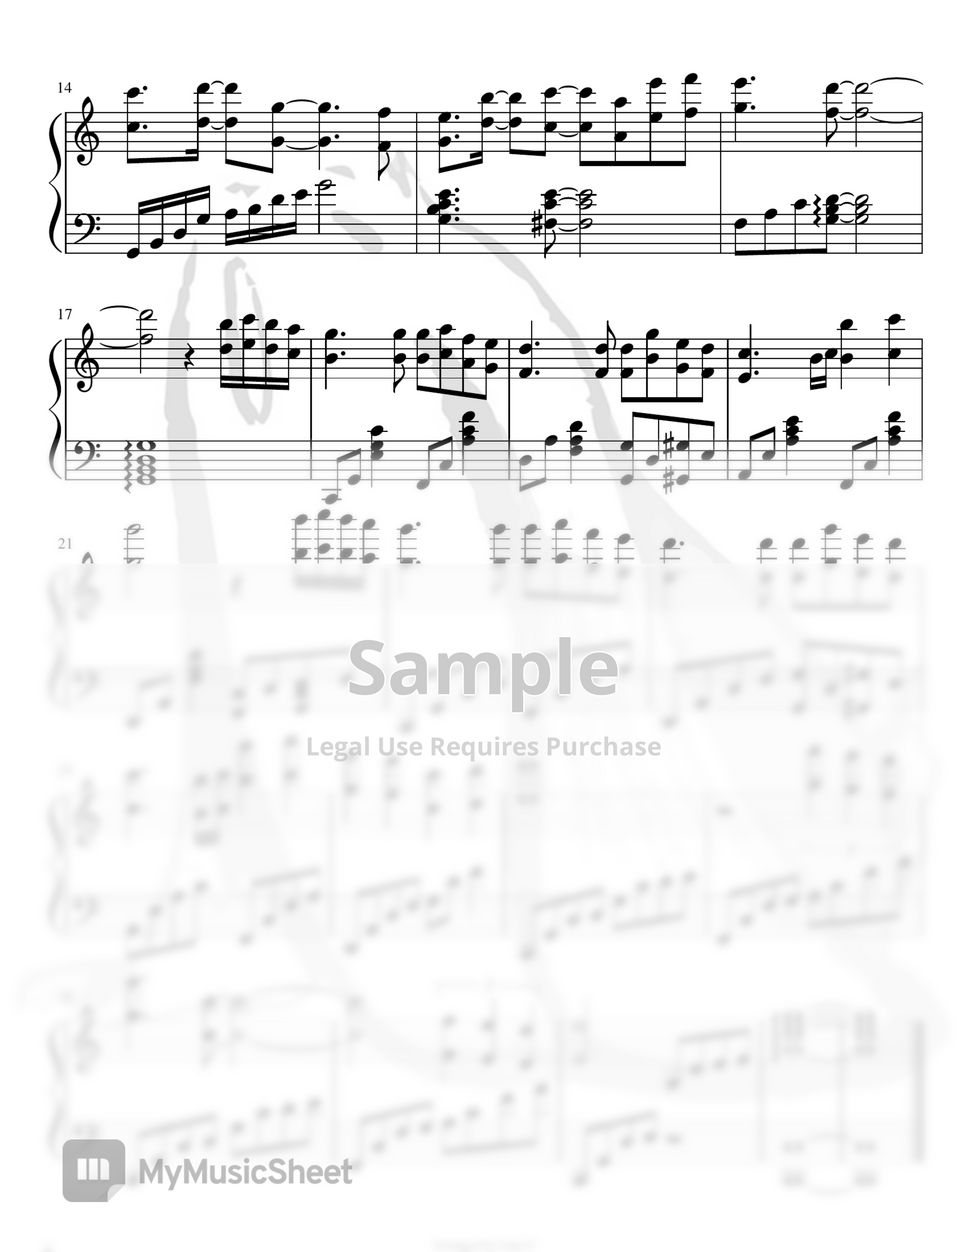 光宗信吉 - 光さす庭-少女革命ウテナ Soundtrack (Anime Song Sheet Music Piano ver) by Lilac.C